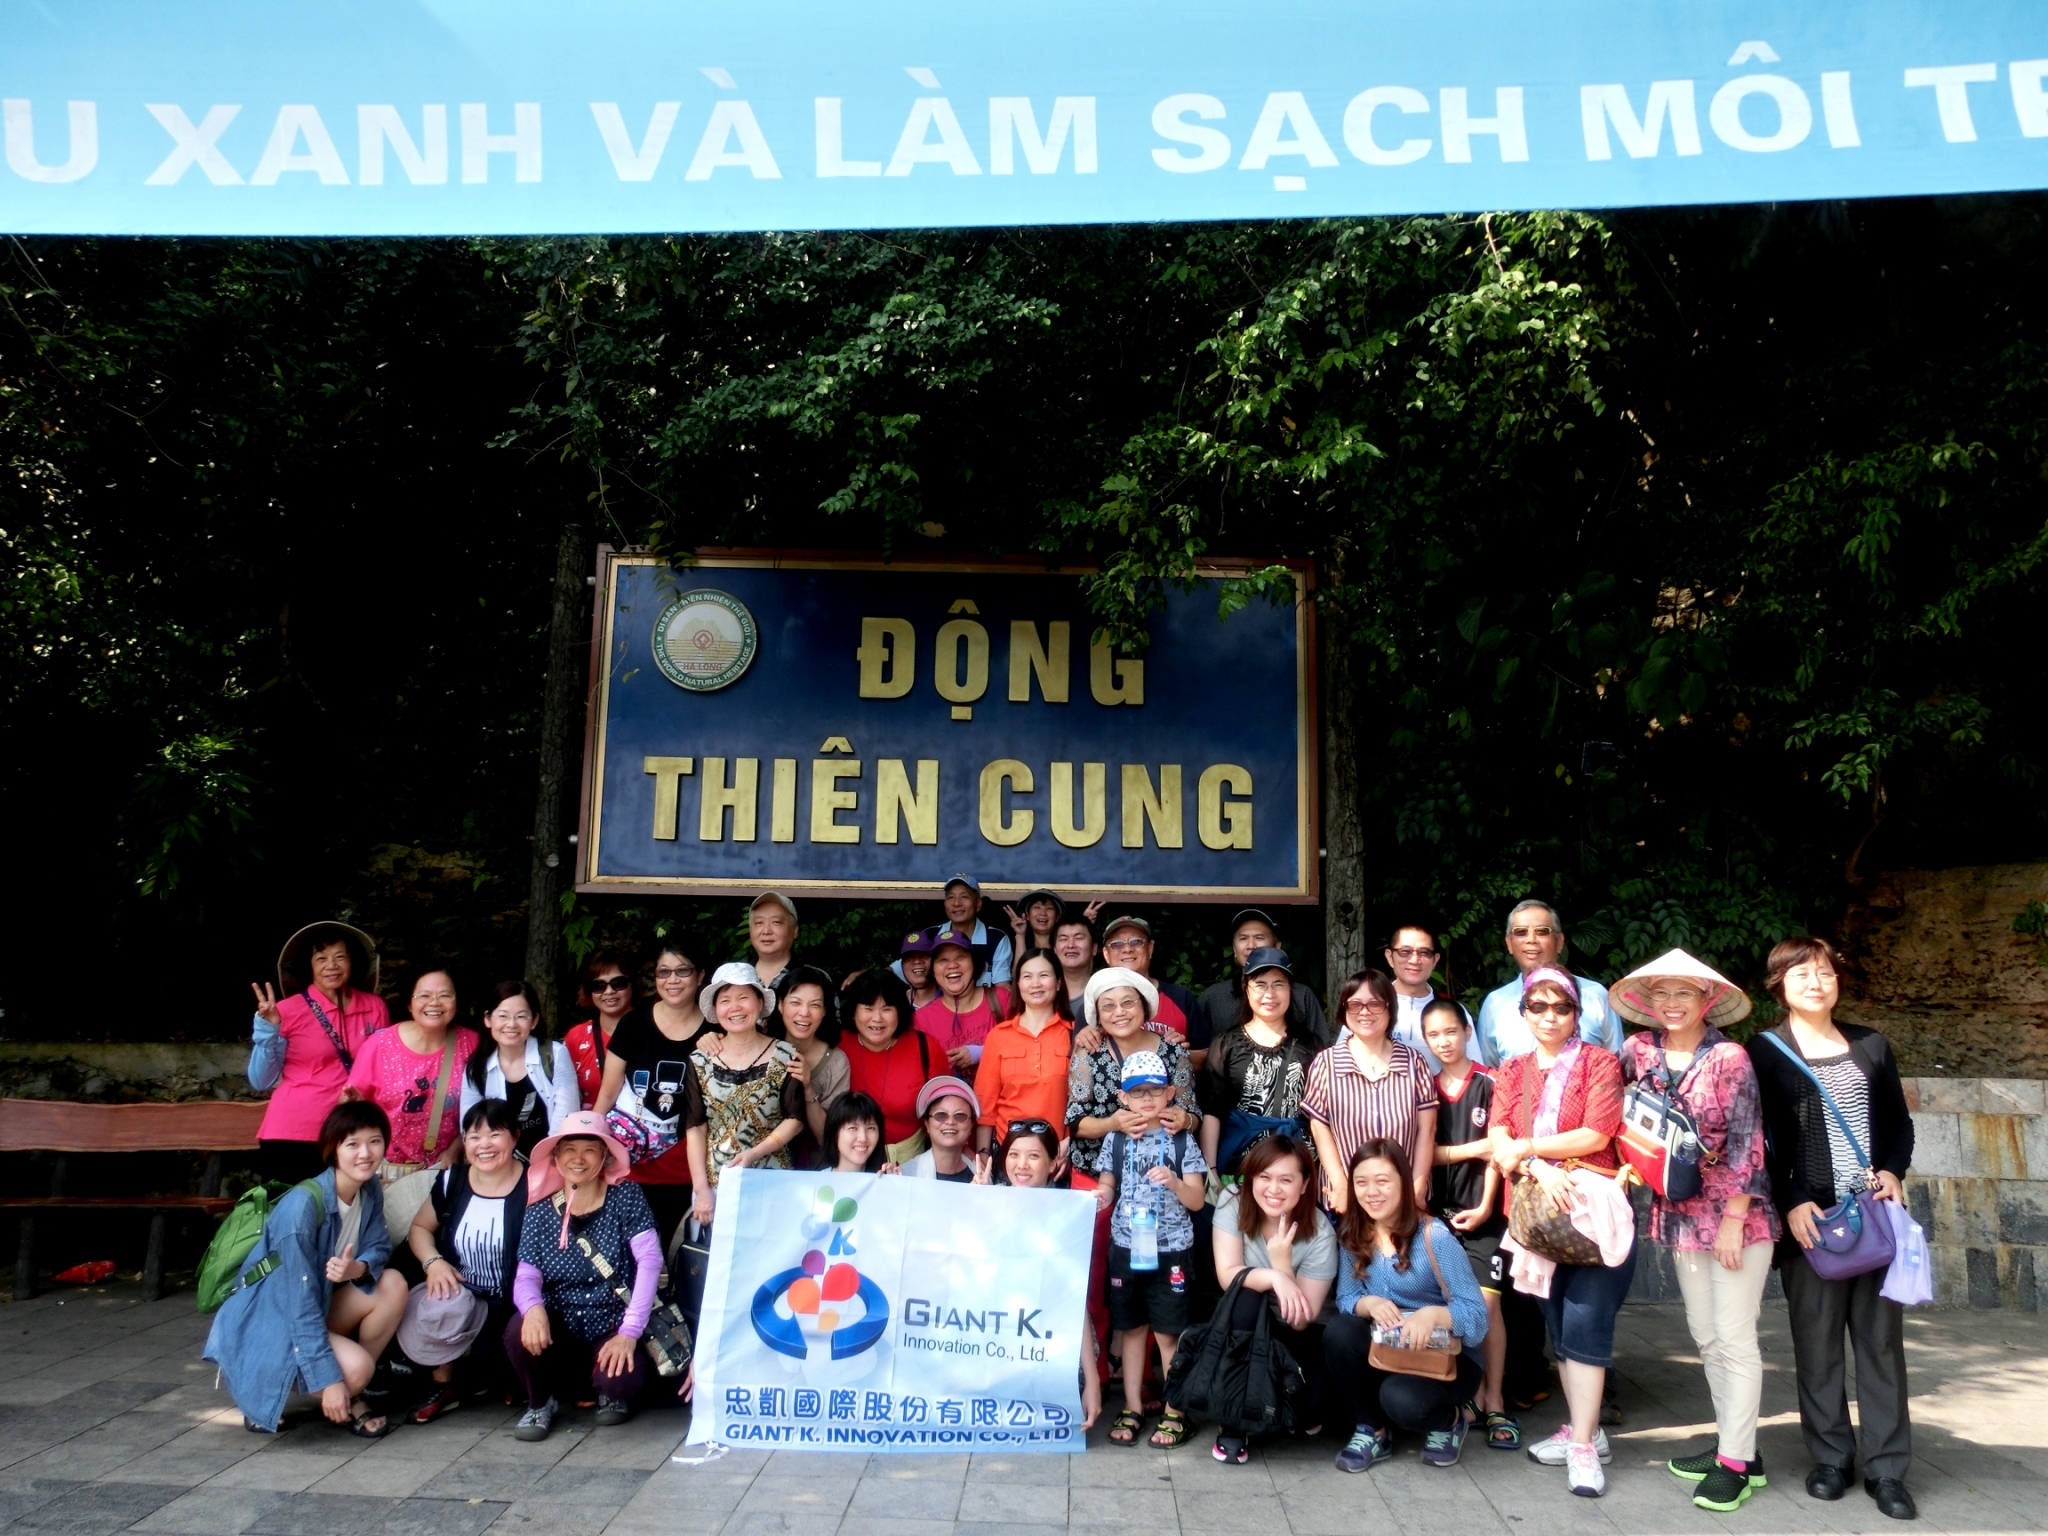 Giant K. سفر شرکتی ویتنام ۲۰۱۶